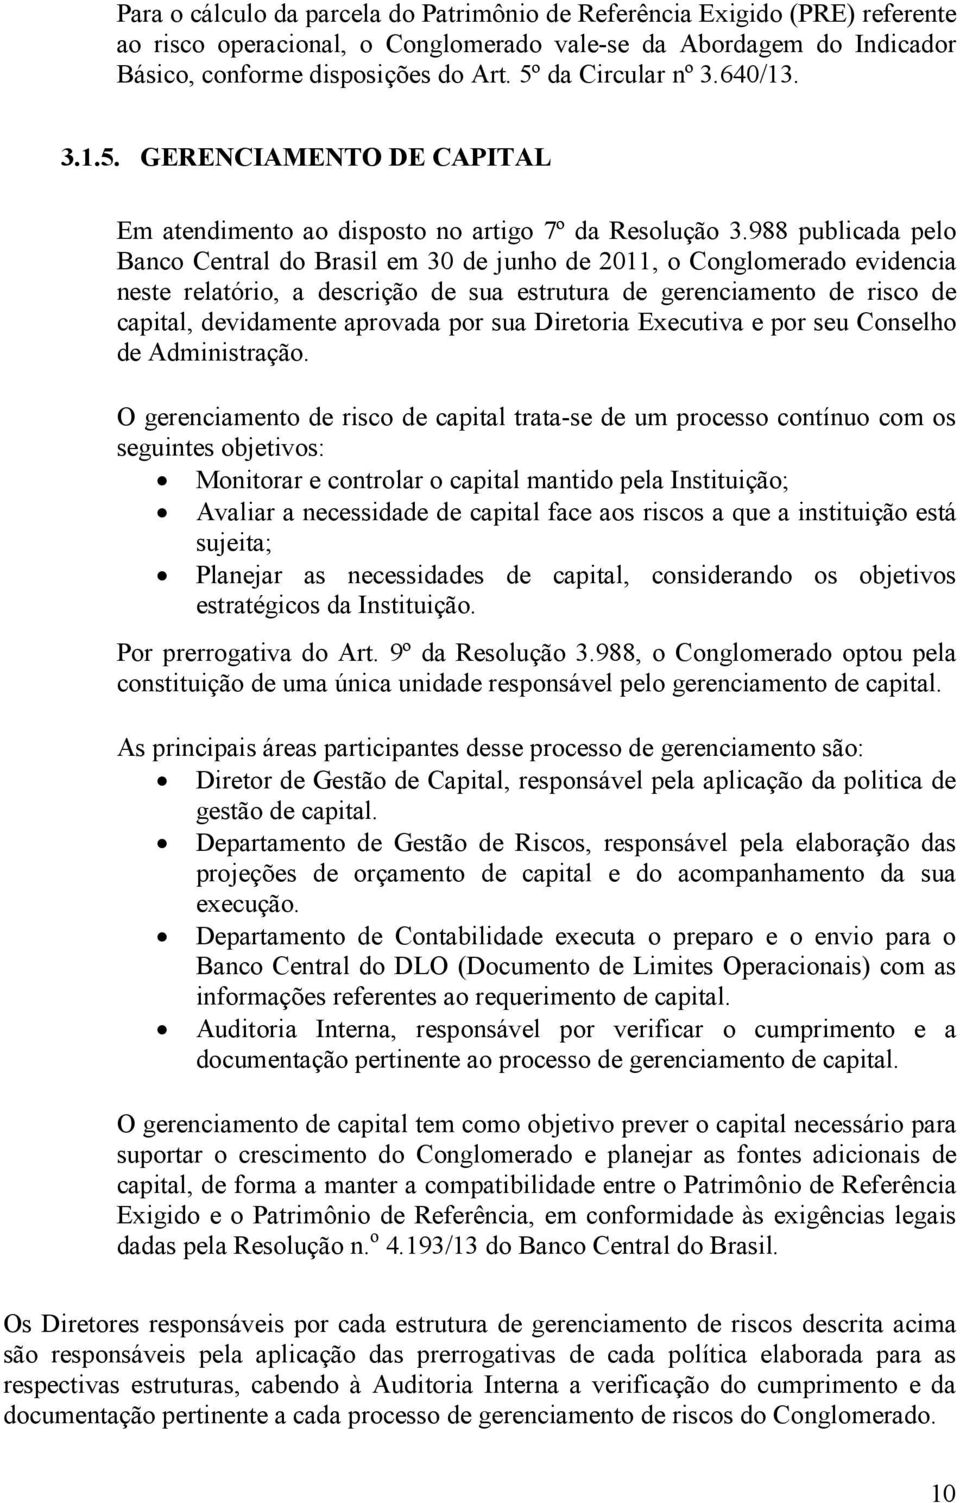 988 publicada pelo Banco Central do Brasil em 30 de junho de 2011, o Conglomerado evidencia neste relatório, a descrição de sua estrutura de gerenciamento de risco de capital, devidamente aprovada